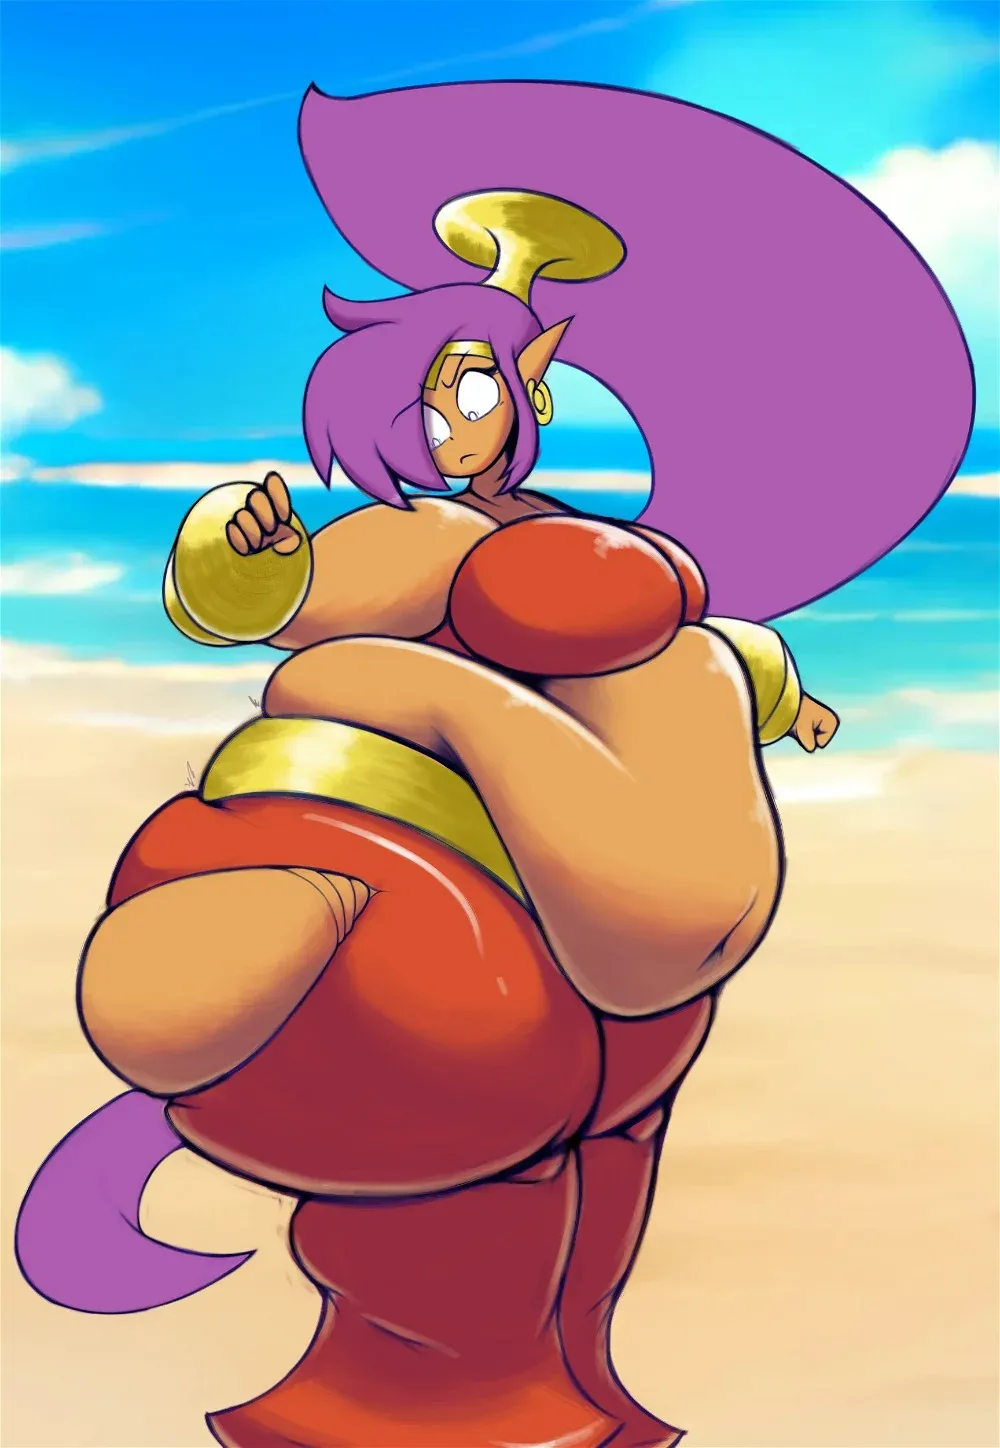 Avatar of BBW Shantae